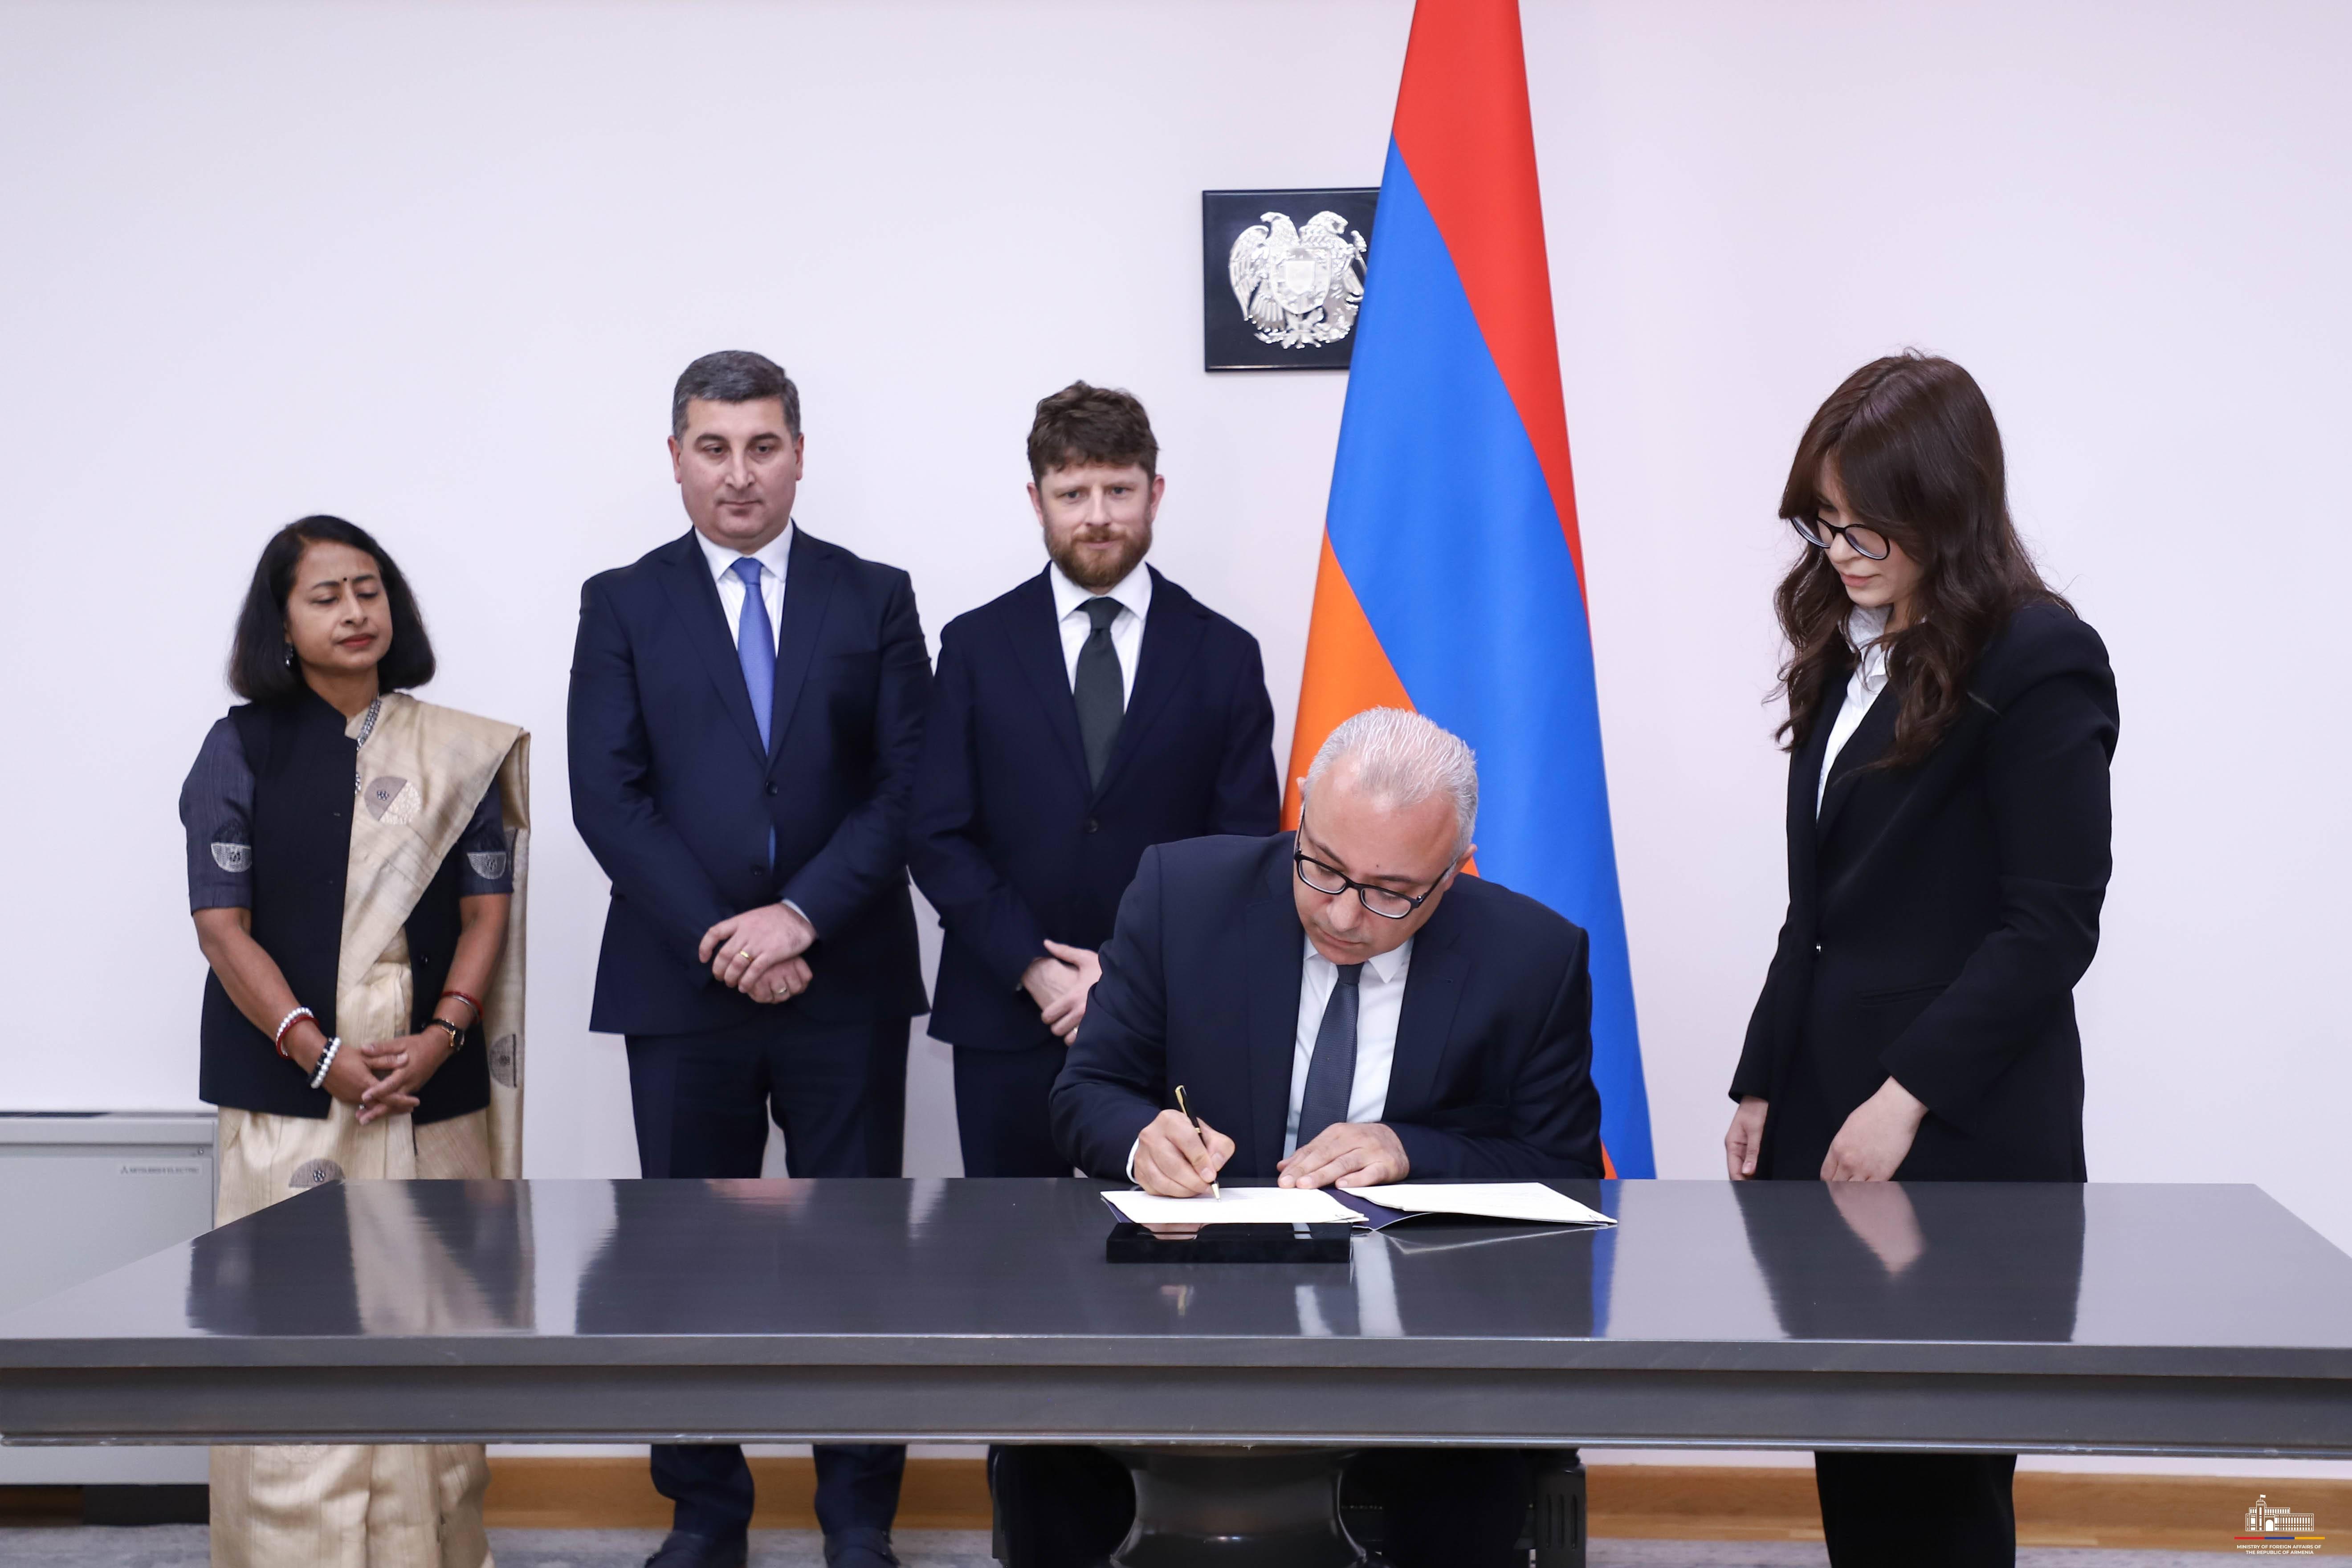 Հայաստանը ստորագրել է «Միջազգային արևային դաշինքի հիմնադրման մասին» շրջանակային համաձայնագիրը